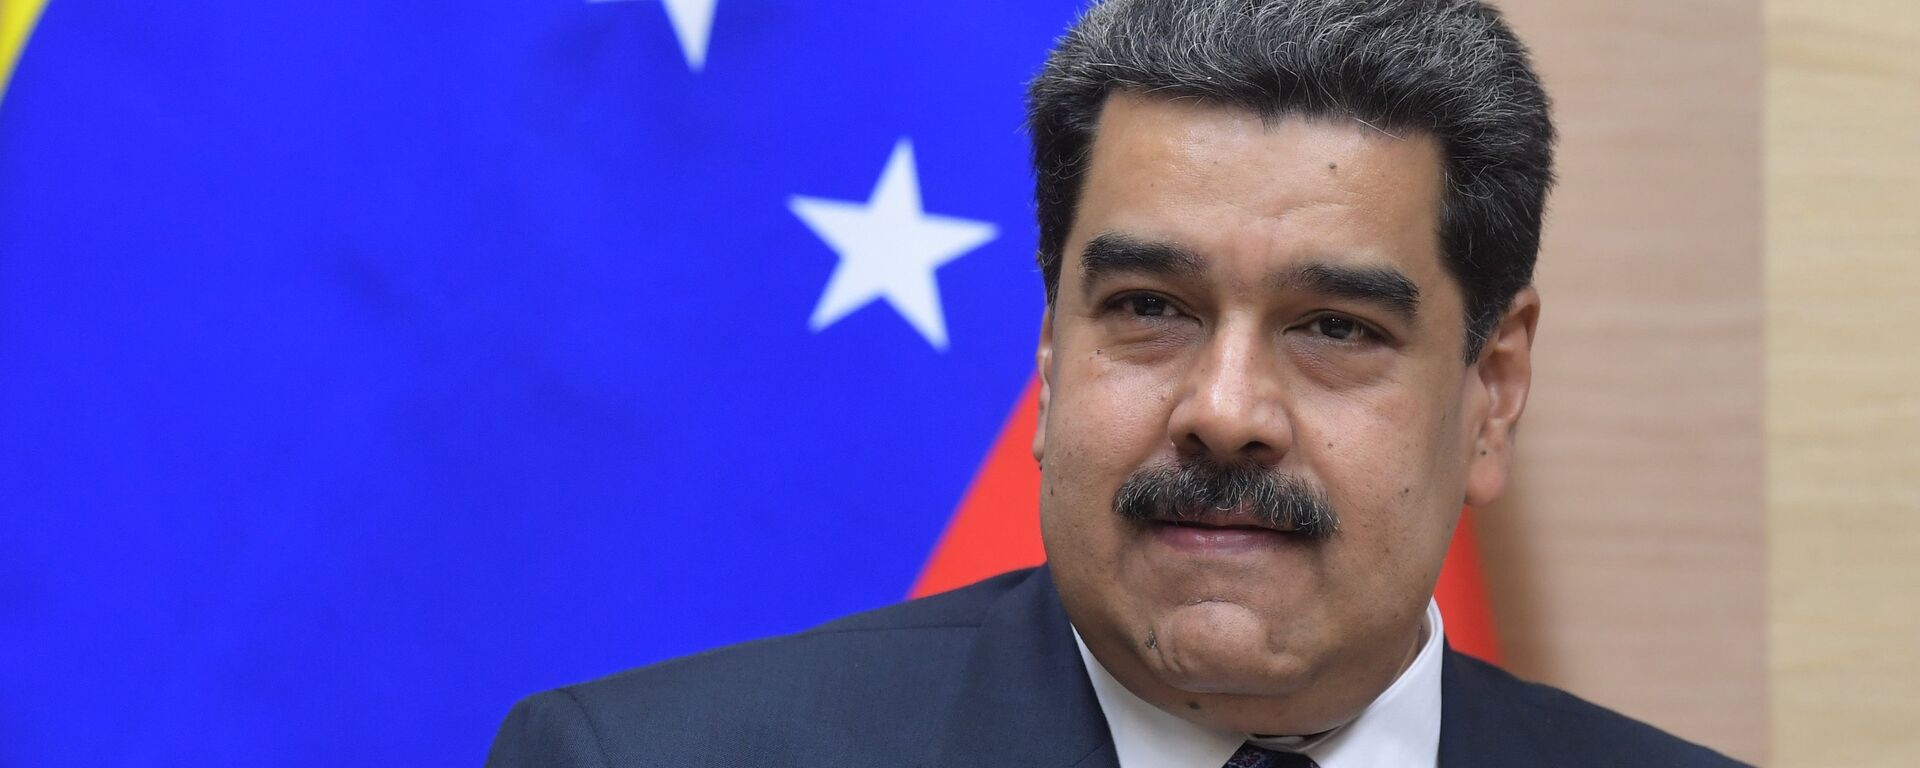 Nicolás Maduro, presidente de Venezuela - Sputnik Mundo, 1920, 07.03.2021